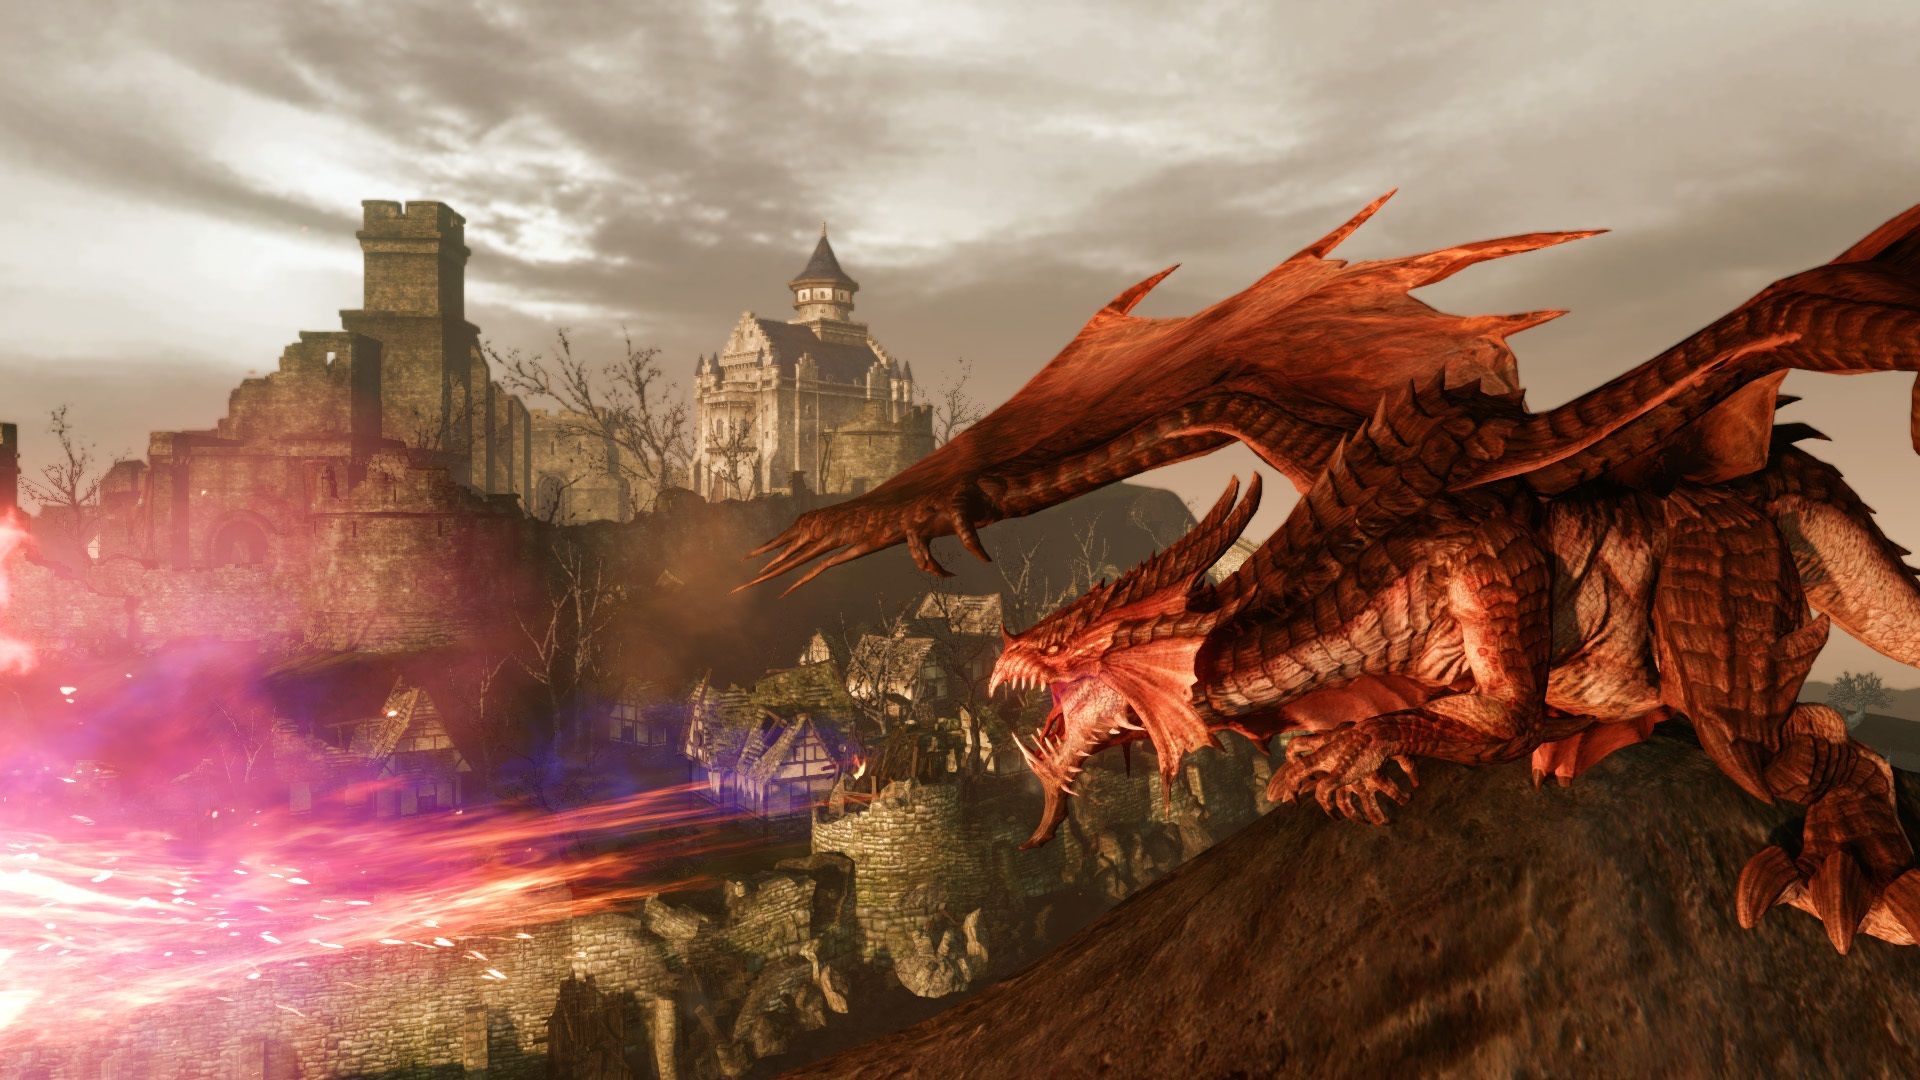 I migliori giochi per PC gratuiti: Archeage. L'immagine mostra un drago che guarda in basso su un insediamento da una collina